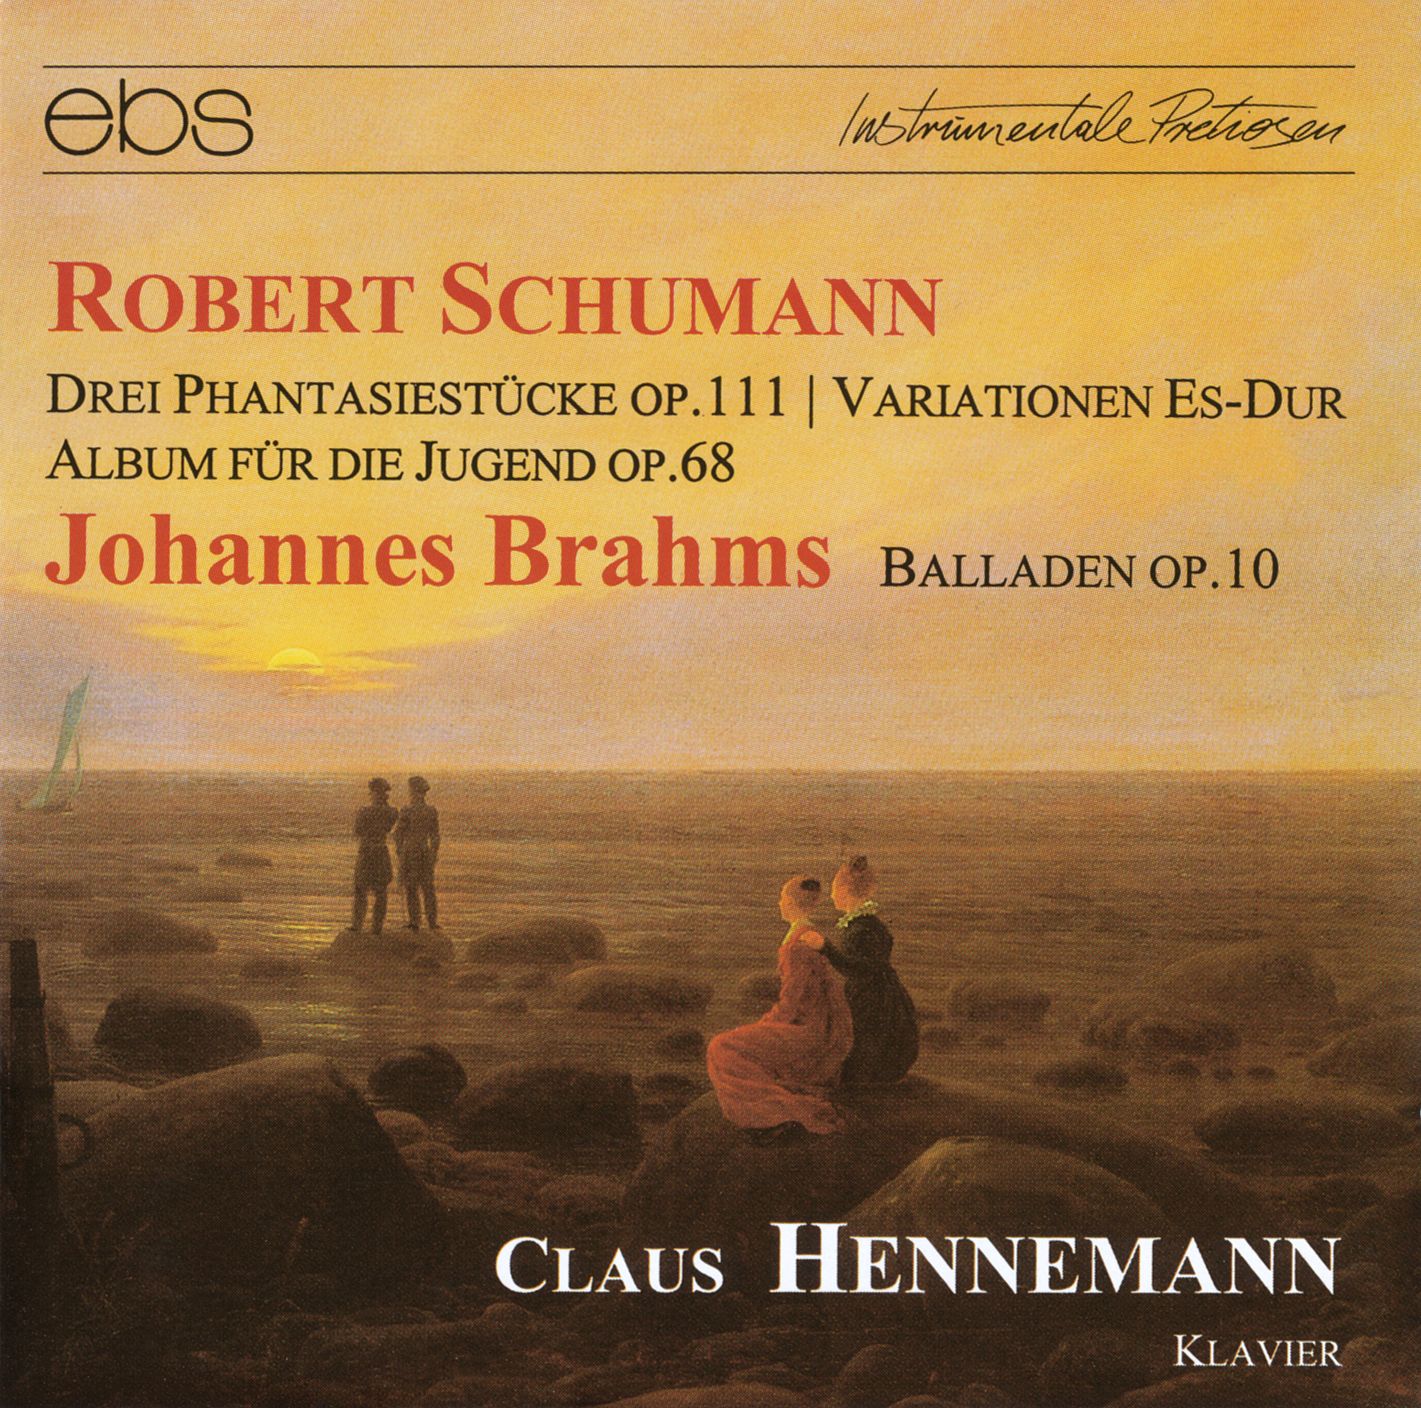 Claus Hennemann spielt Schumann & Brahms